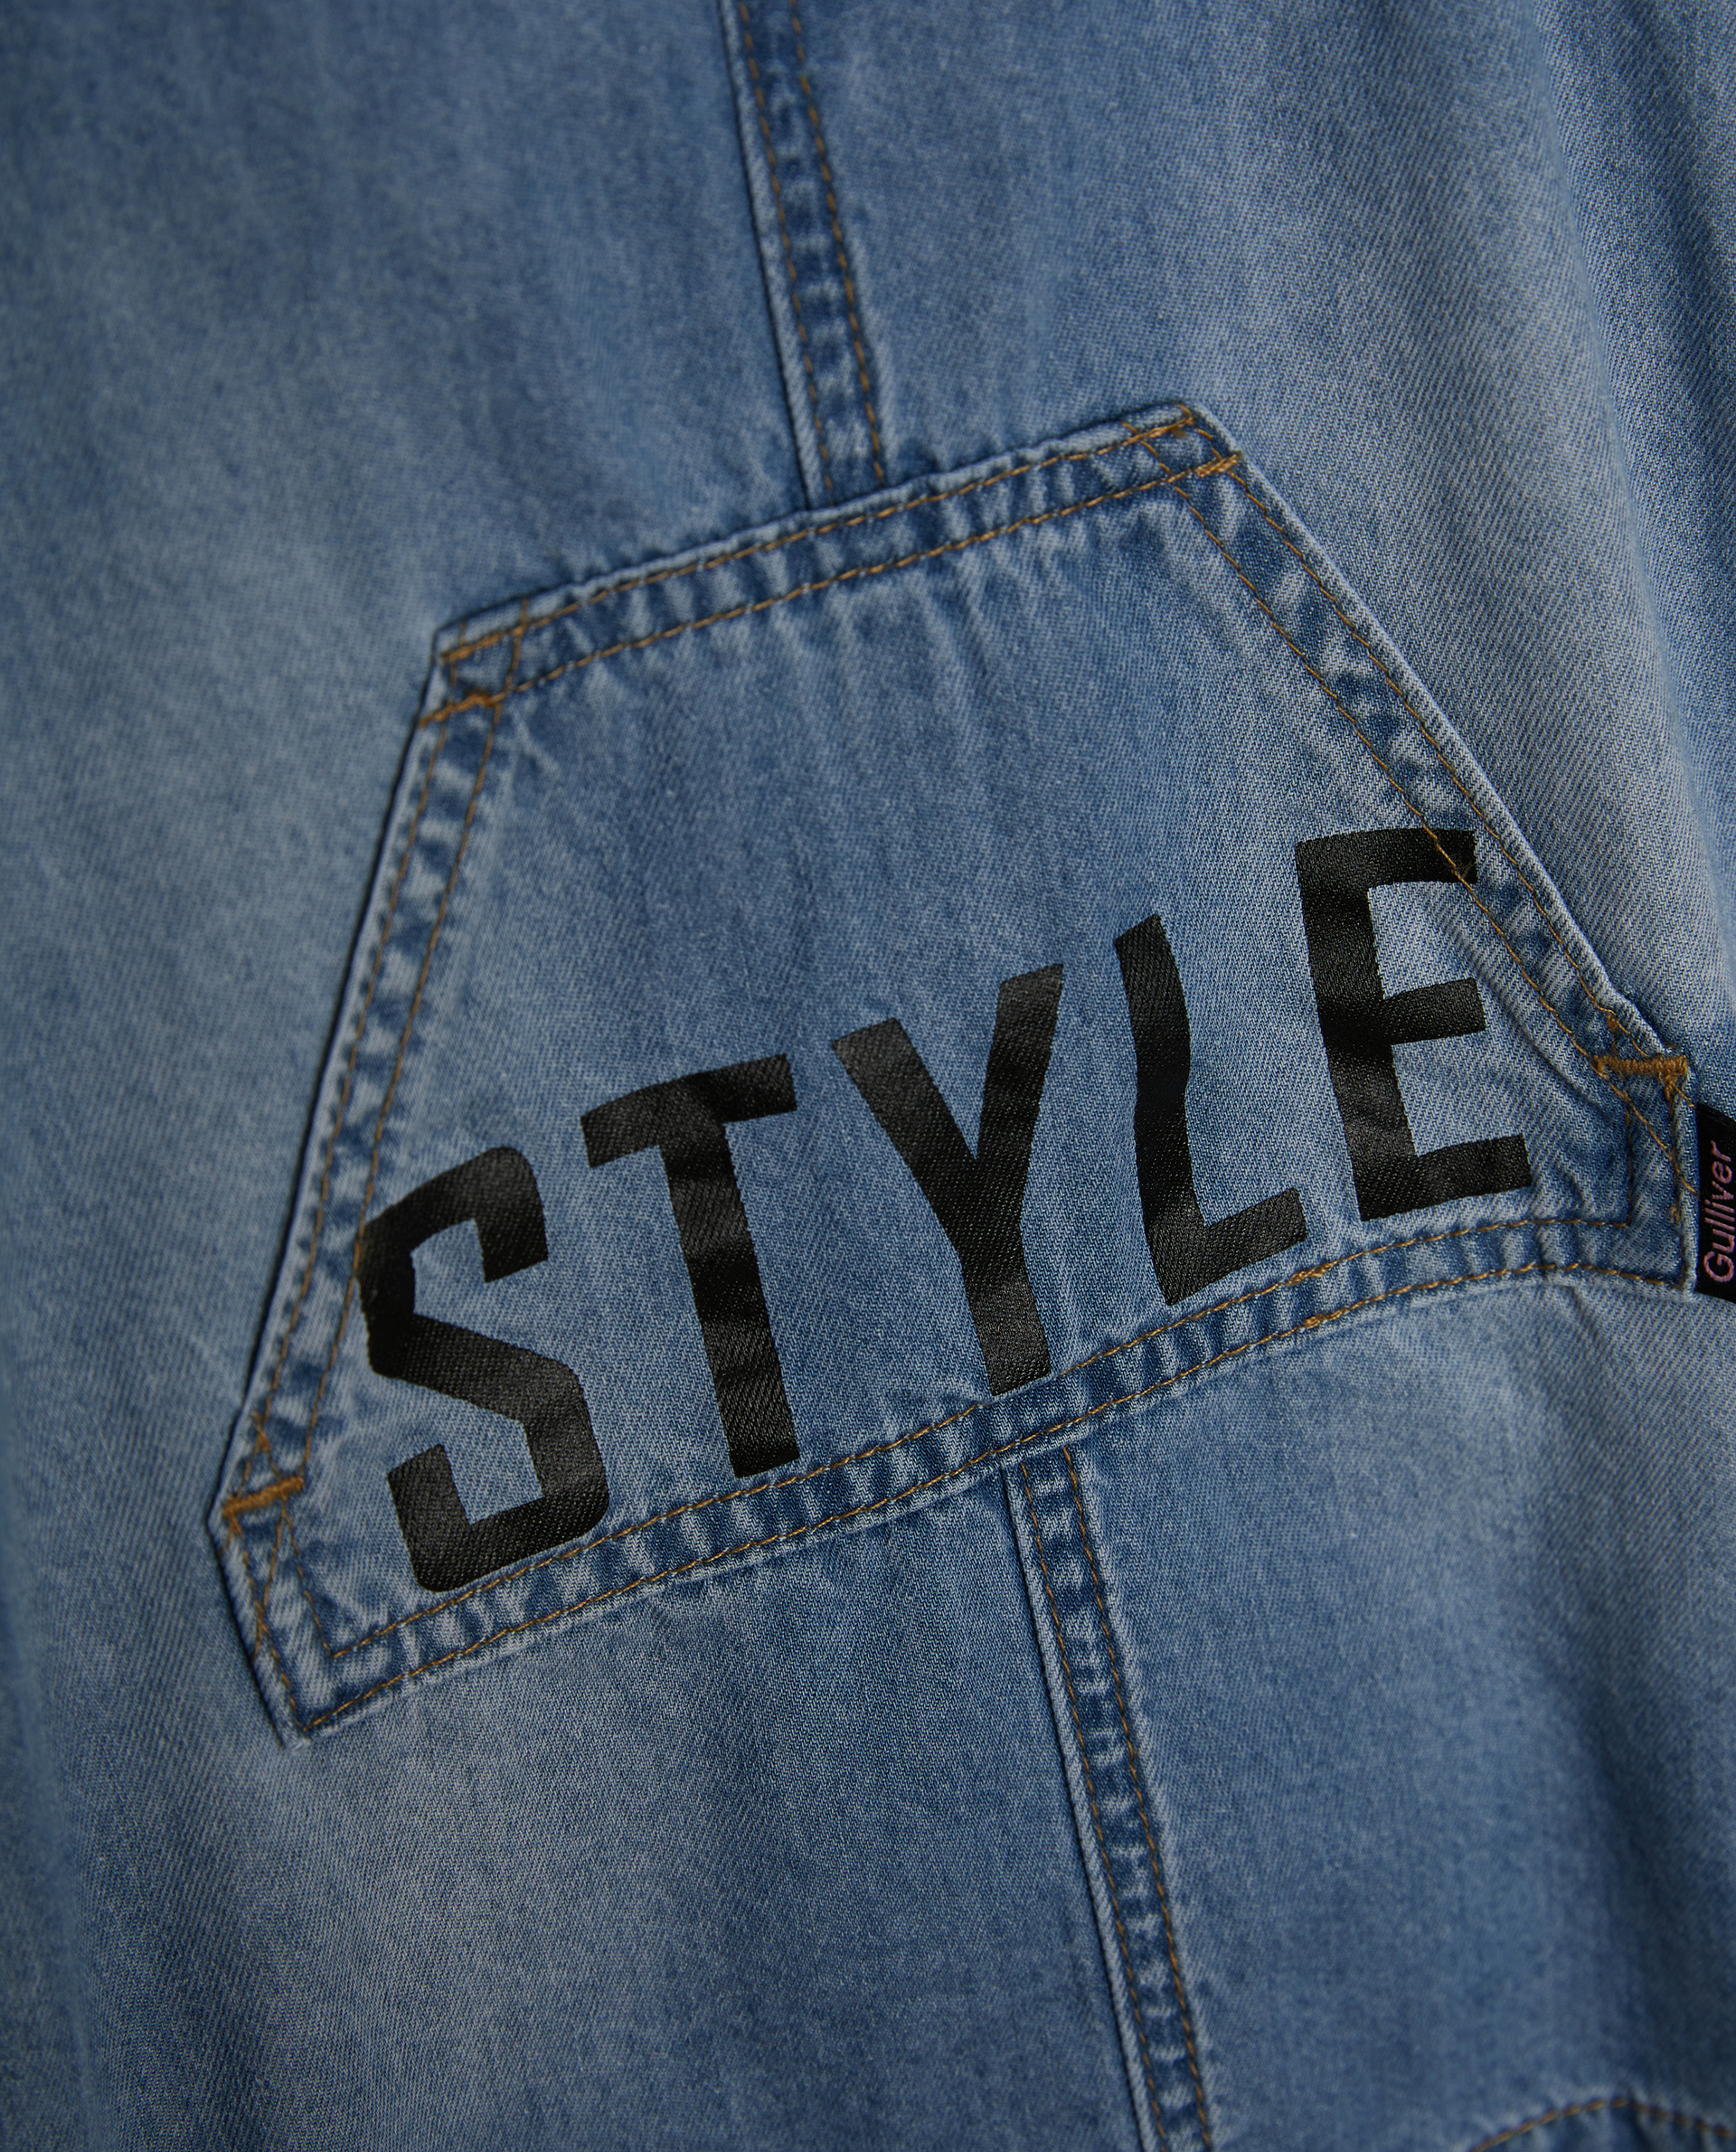 Сарафан джинсовый с карманом Gulliver 12131GBC2501, размер 92, цвет голубой мини - фото 2